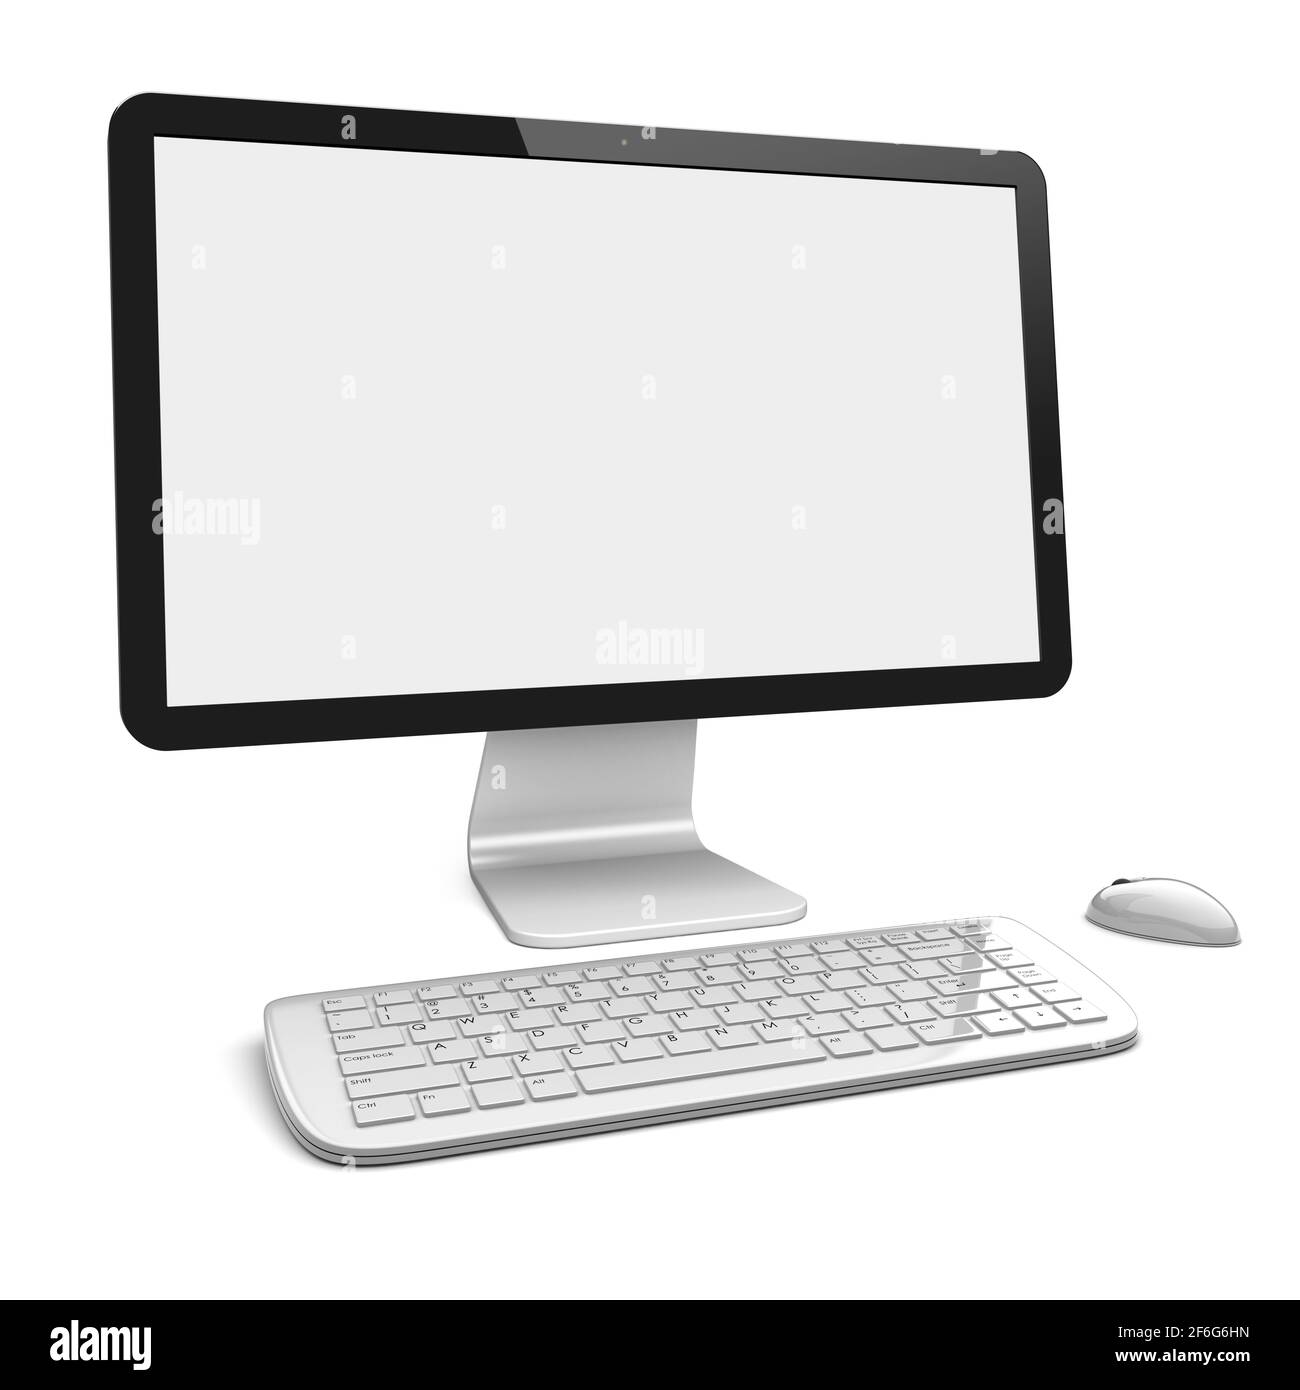 Desktop-pc-Computer mit großem Breitbildschirm, Tastatur und Maus sowie leerem Bildschirm. Isoliert auf Weiß. 3d-gerendertes Bild Stockfoto